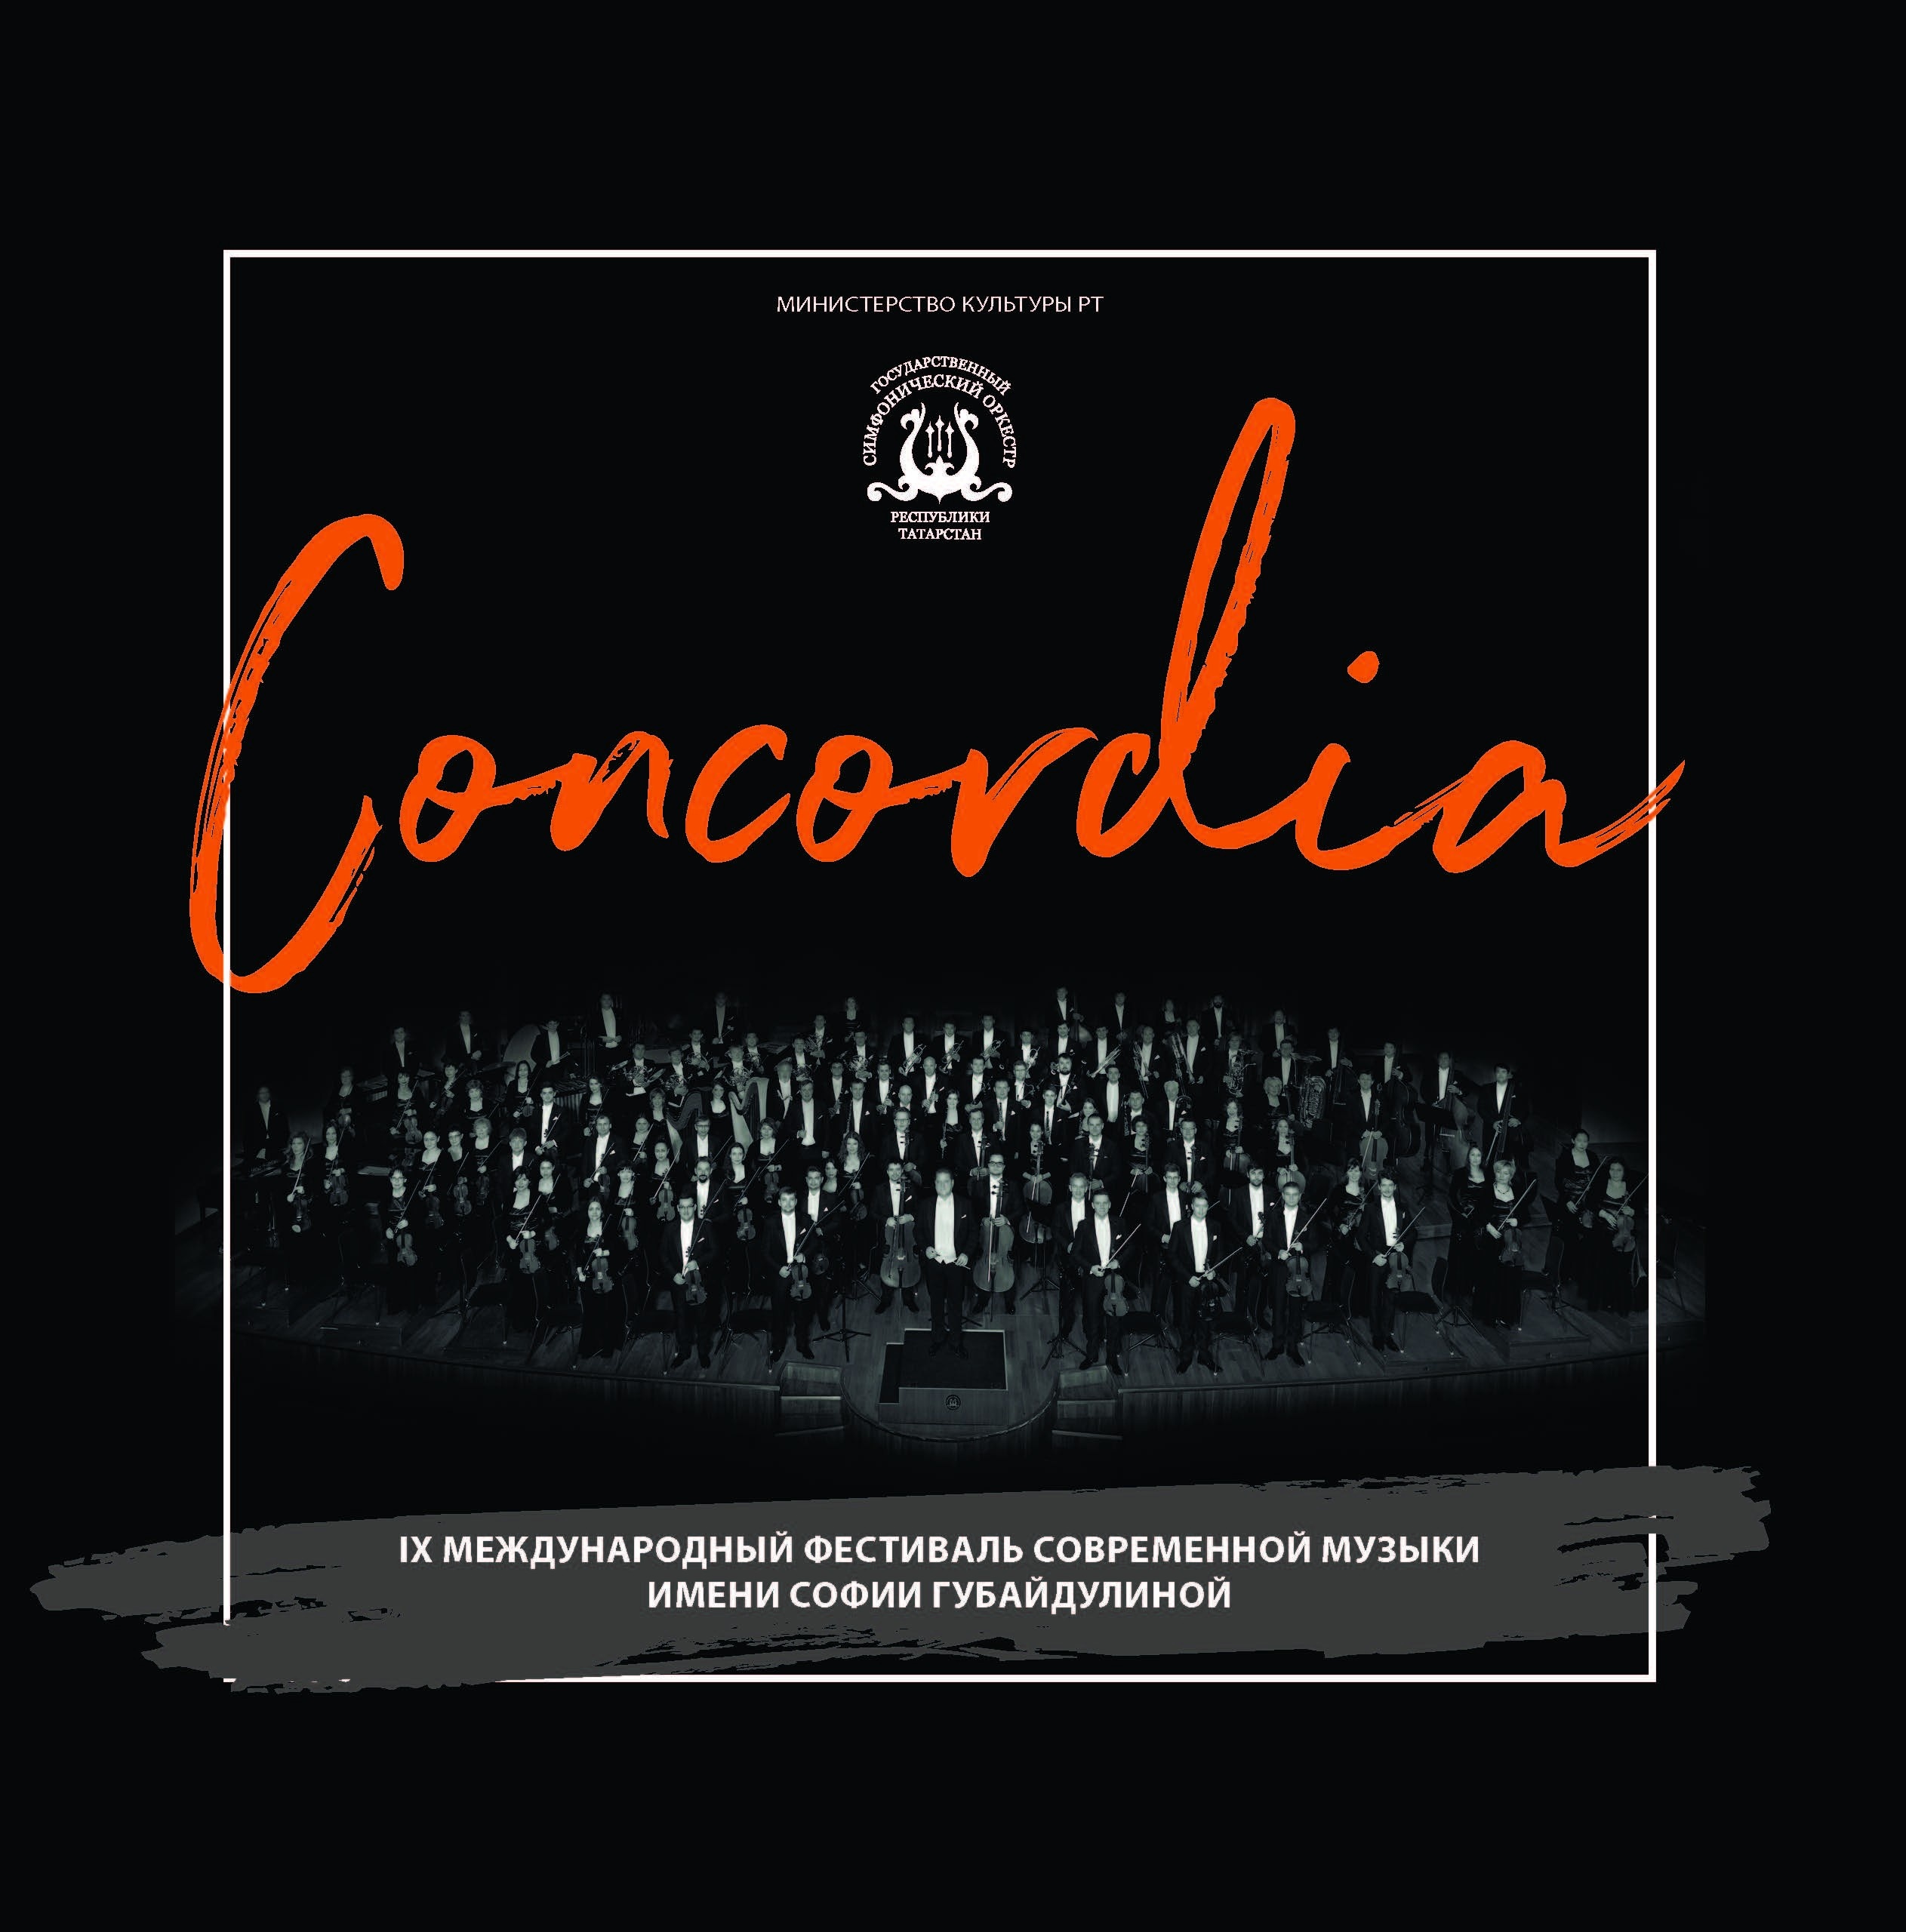 IX Sofia Gubaidulina International Festival of Contemporary Music Concordia